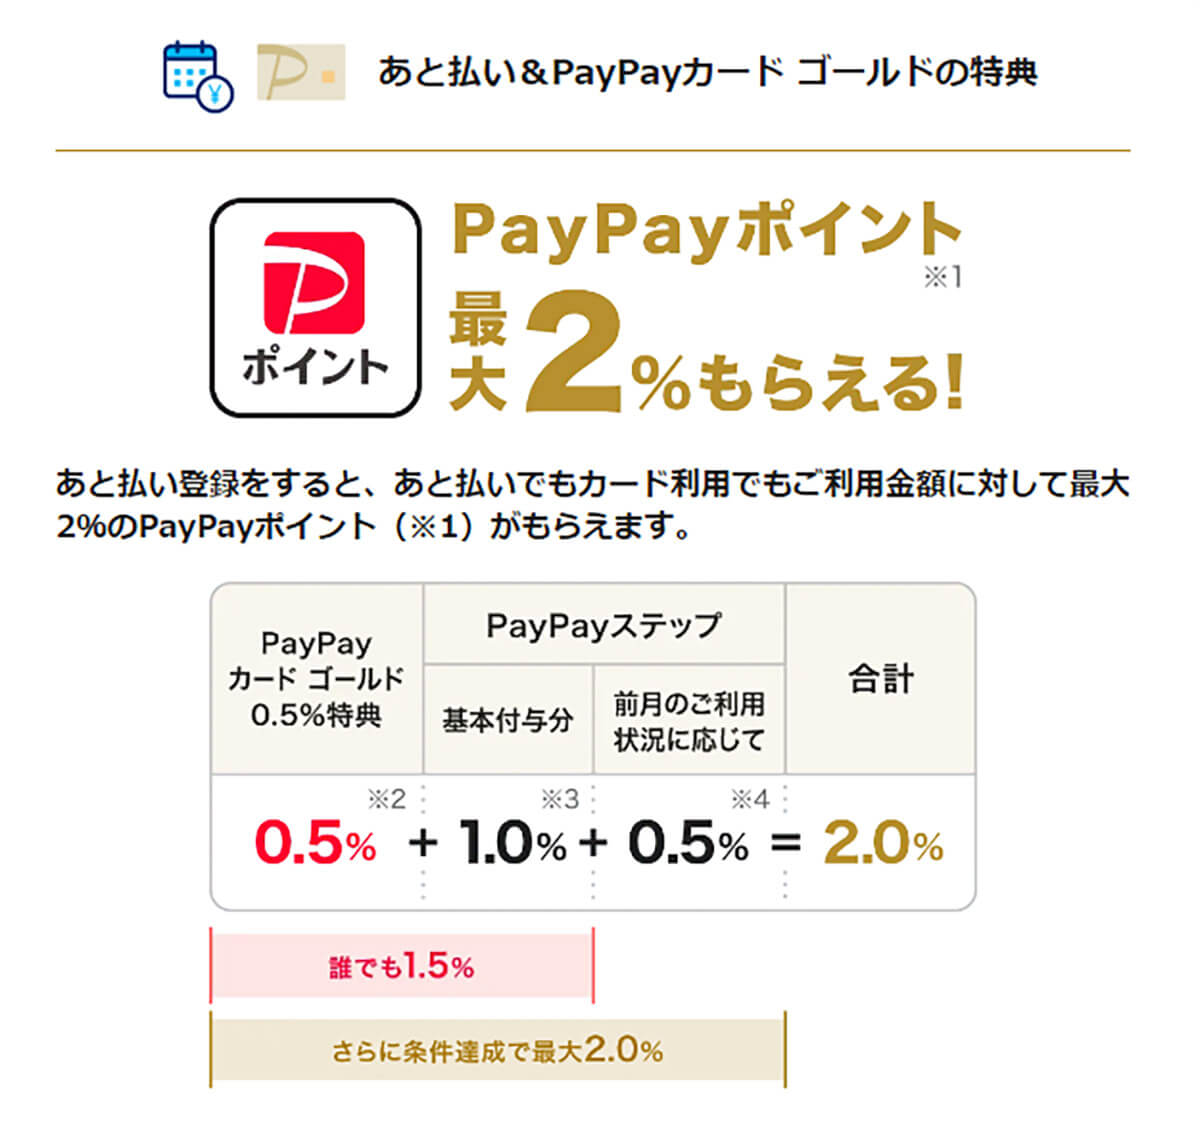 PayPayが推奨している「あと払い」でPayPayカード ゴールドを使用すると0.5％が加算されるので、PayPay STEPで1.5％の人は合計で2％還元になる